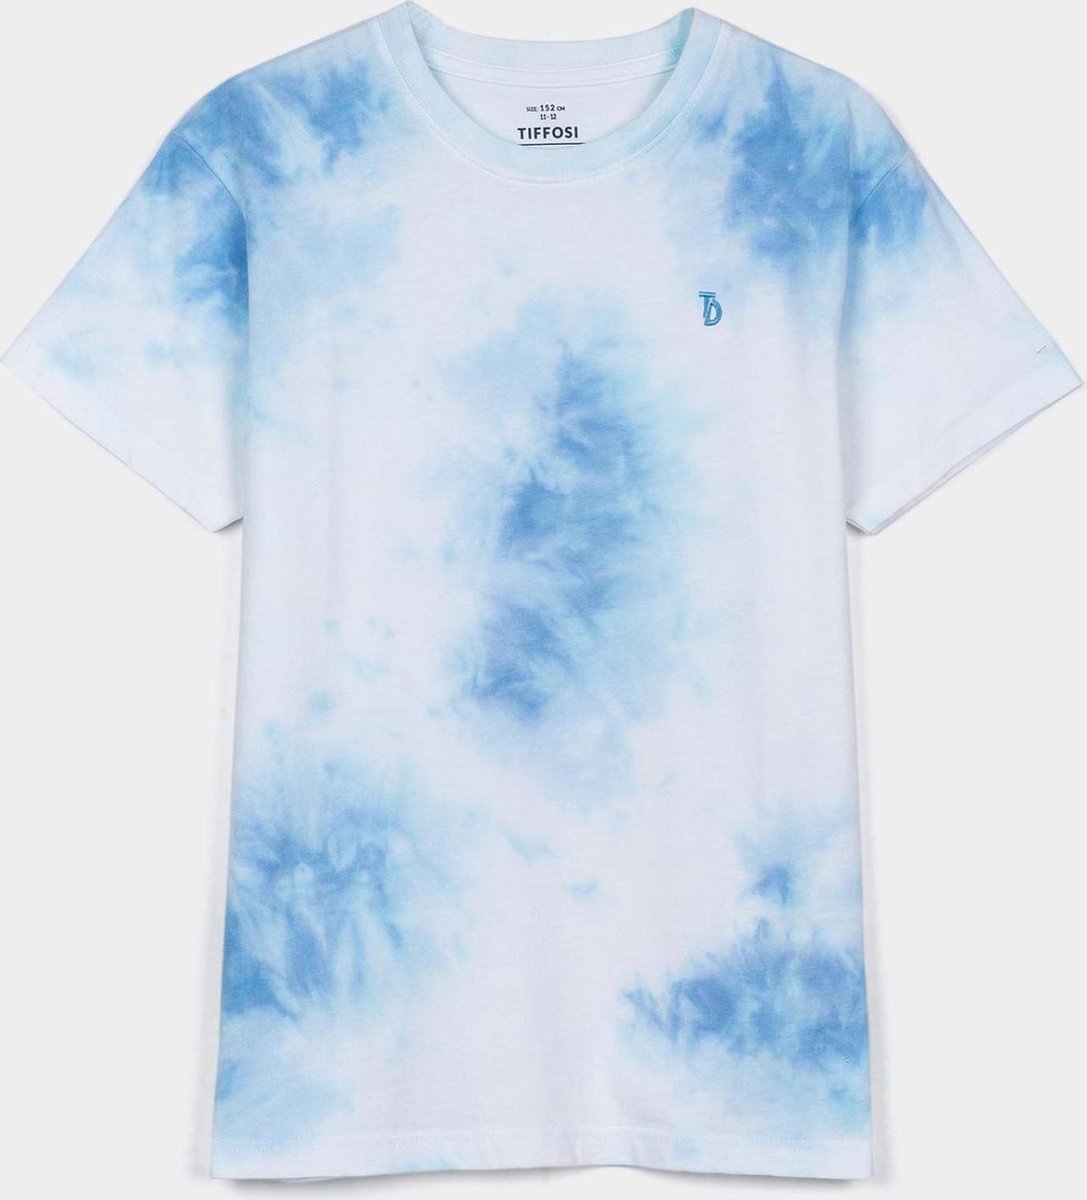 Tiffosi T-shirt jongens wit/blauw tie dye maat 128